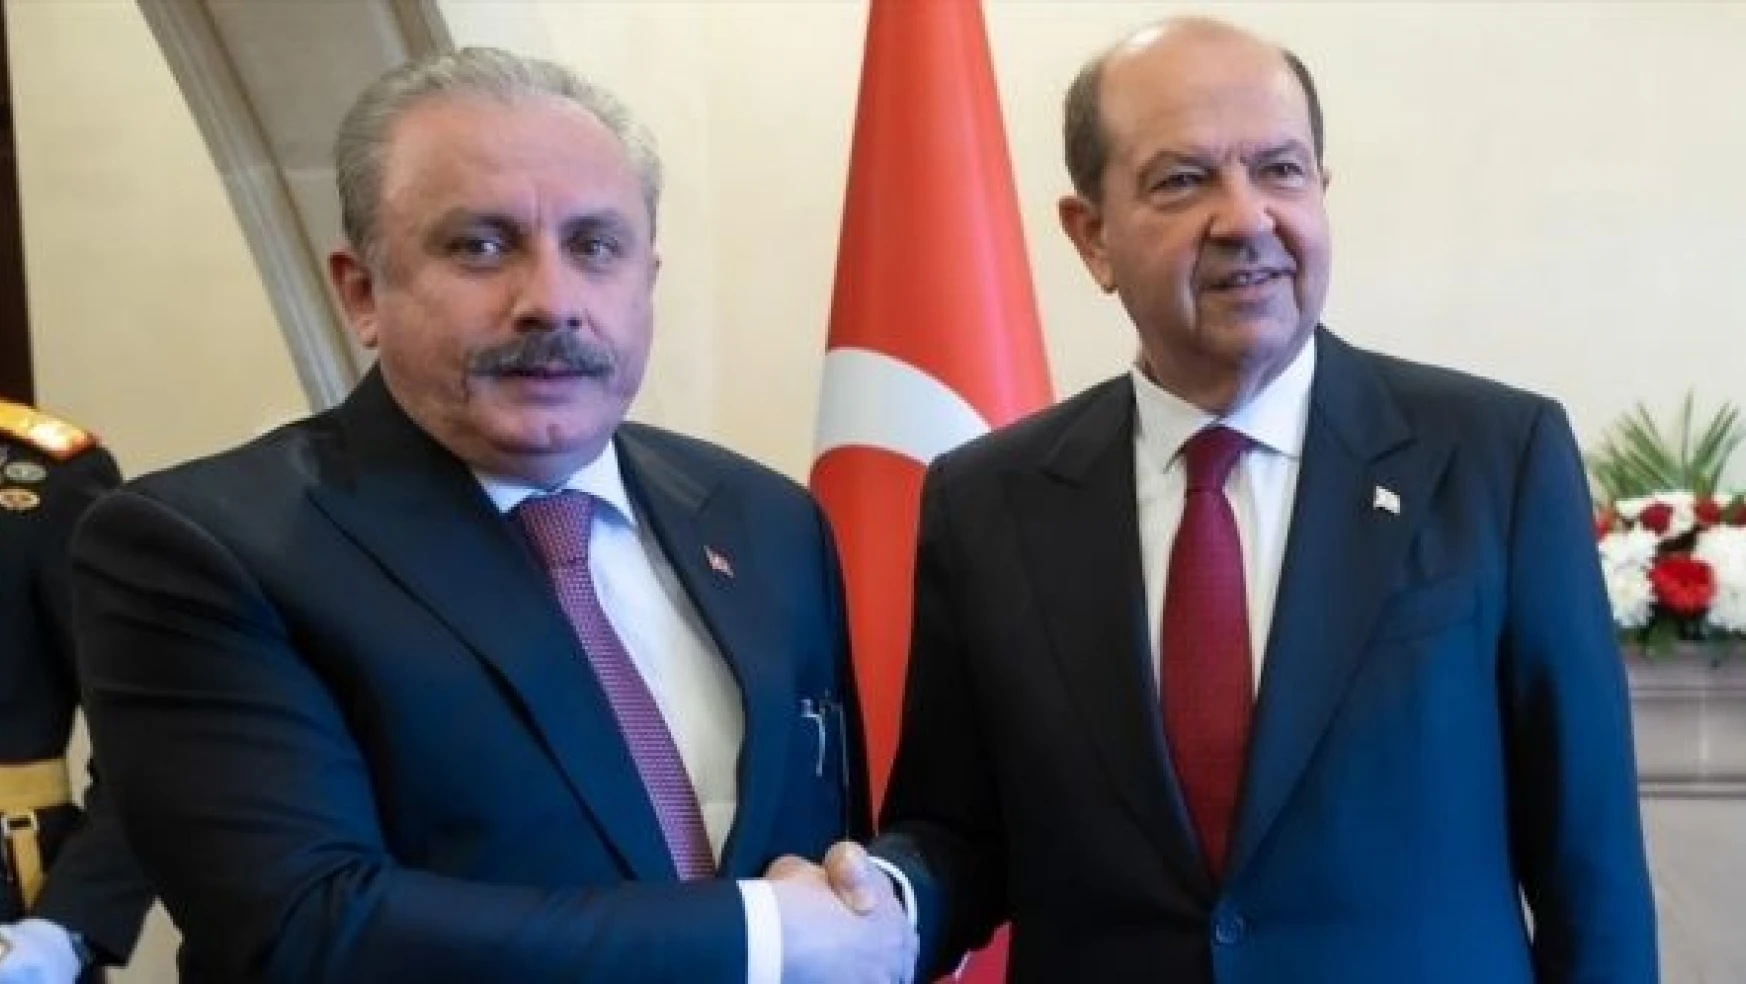 TBMM Başkanı Mustafa Şentop KKTC Cumhurbaşkanı Ersin Tatar ile bir araya geldi